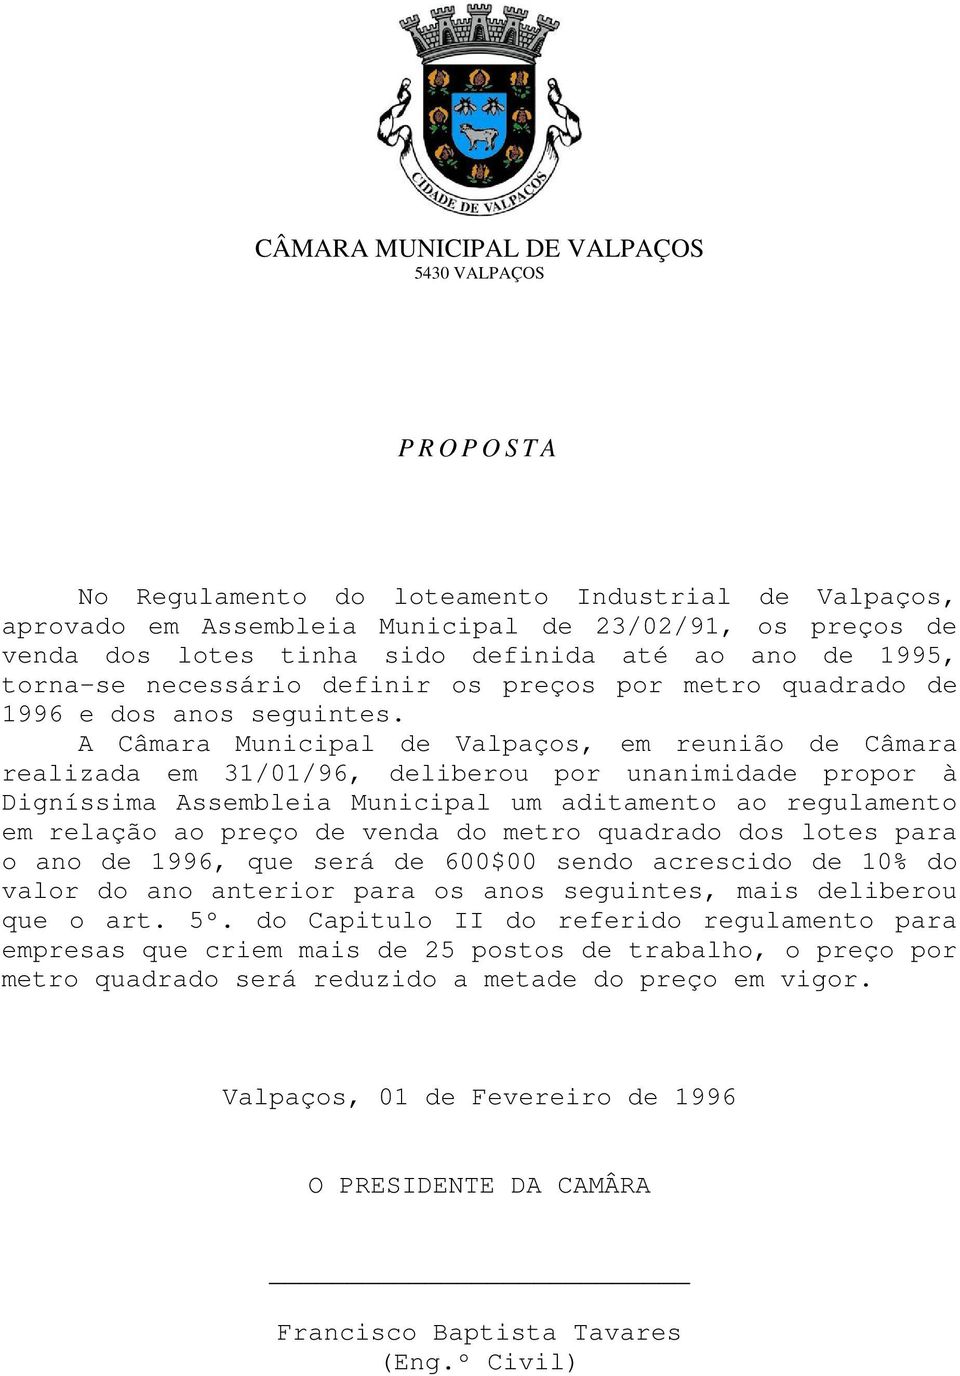 A Câmara Municipal de Valpaços, em reunião de Câmara realizada em 31/01/96, deliberou por unanimidade propor à Digníssima Assembleia Municipal um aditamento ao regulamento em relação ao preço de